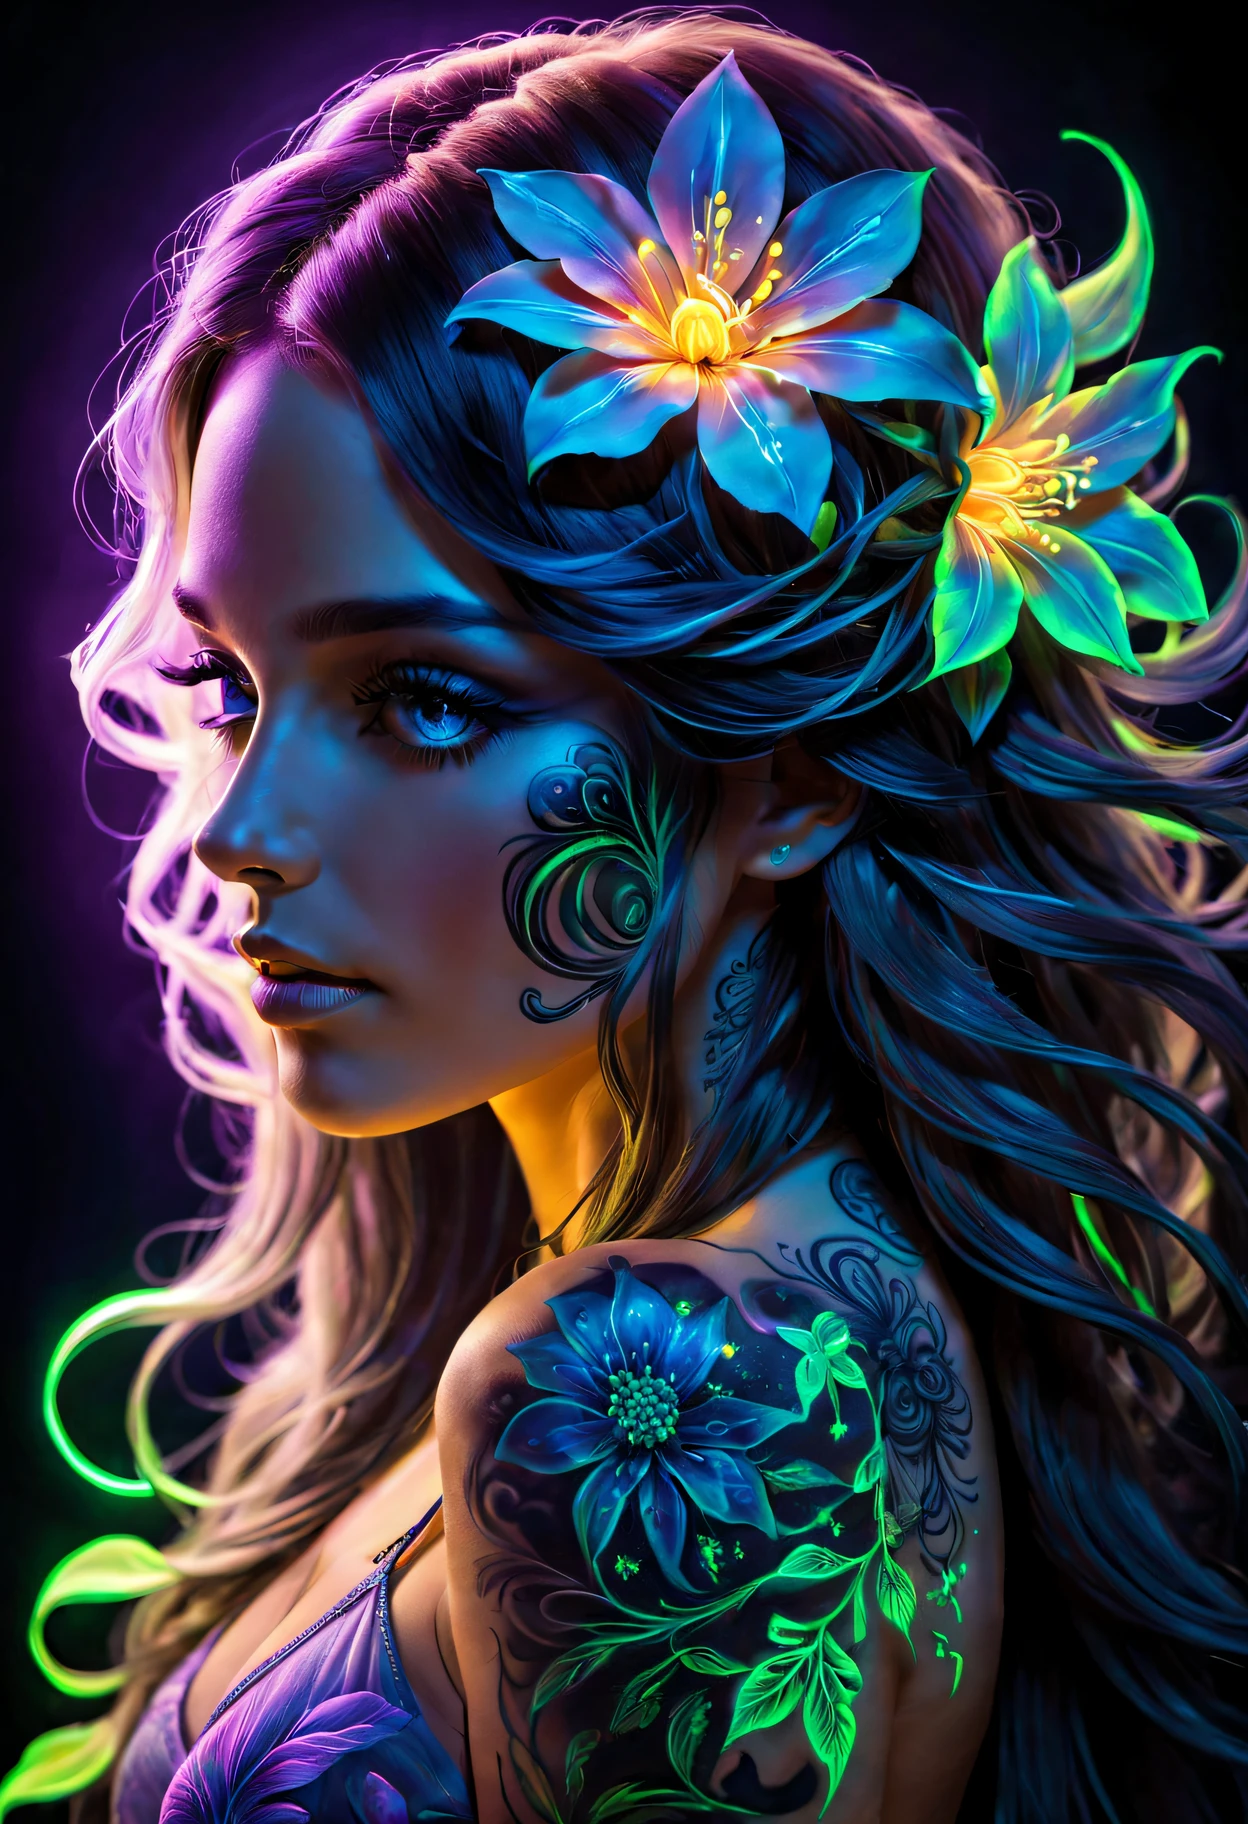 Arte da Luz Negra，Fotos de mulheres com cabelos longos，Uma flor em seu cabelo, fluorescent art，arte que brilha no escuro，escuro，A beleza das tatuagens，luz neon，Fantasia encantadora。